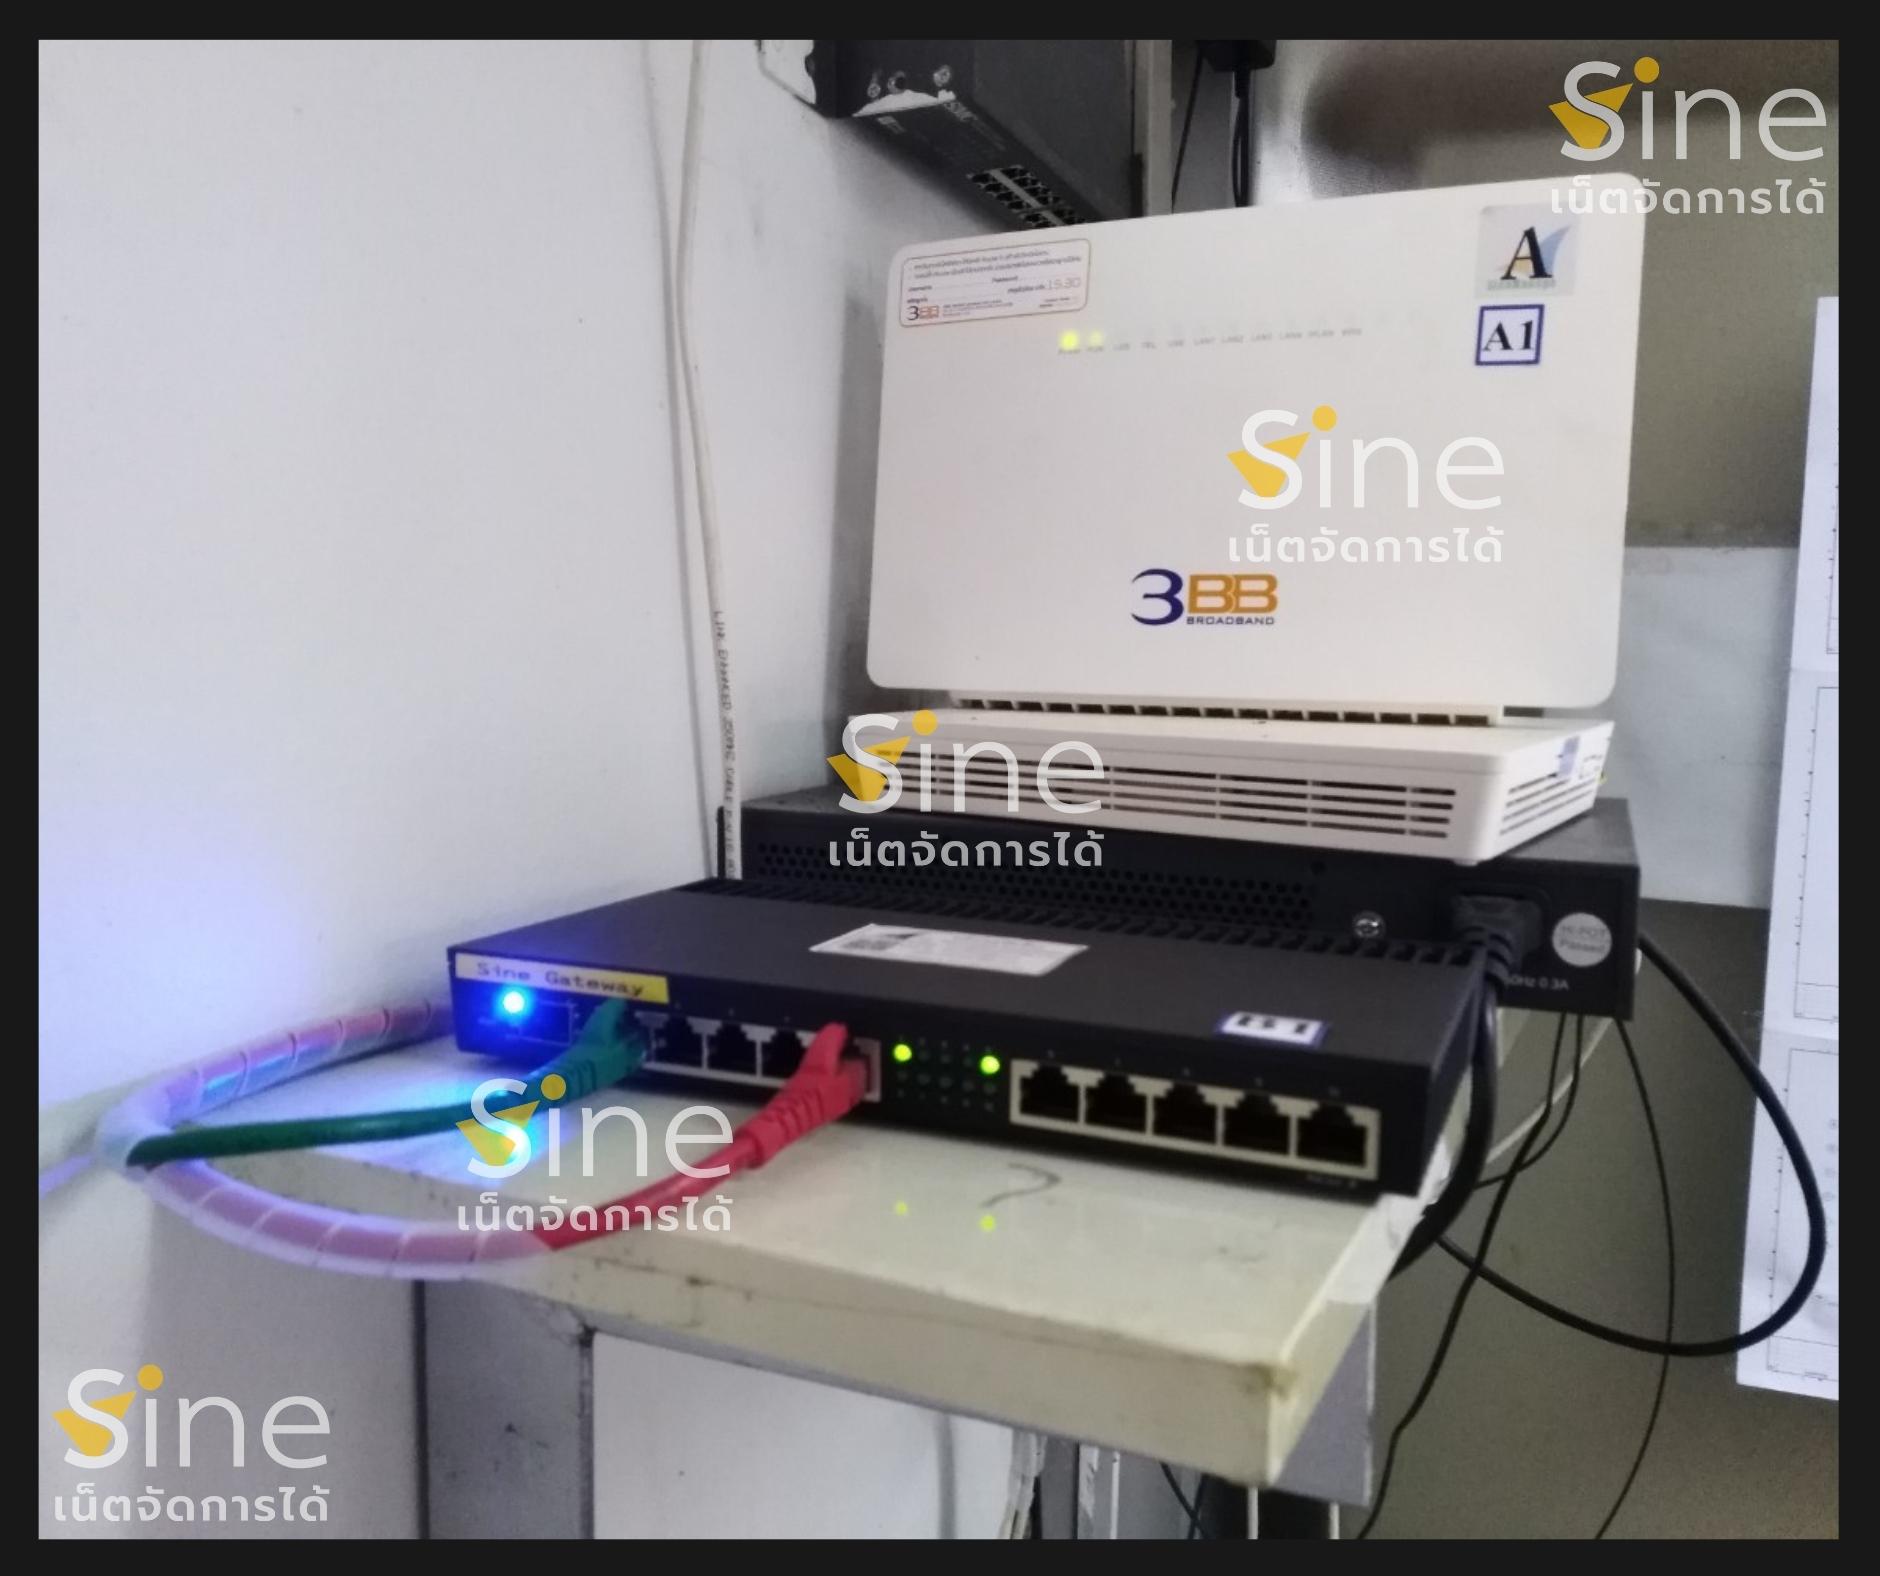 ติดตั้ง SineWAN เชื่อมโยงสาขา เครือข่ายสาขา WAN VPN Network Internet เน็ตระหว่างสาขา